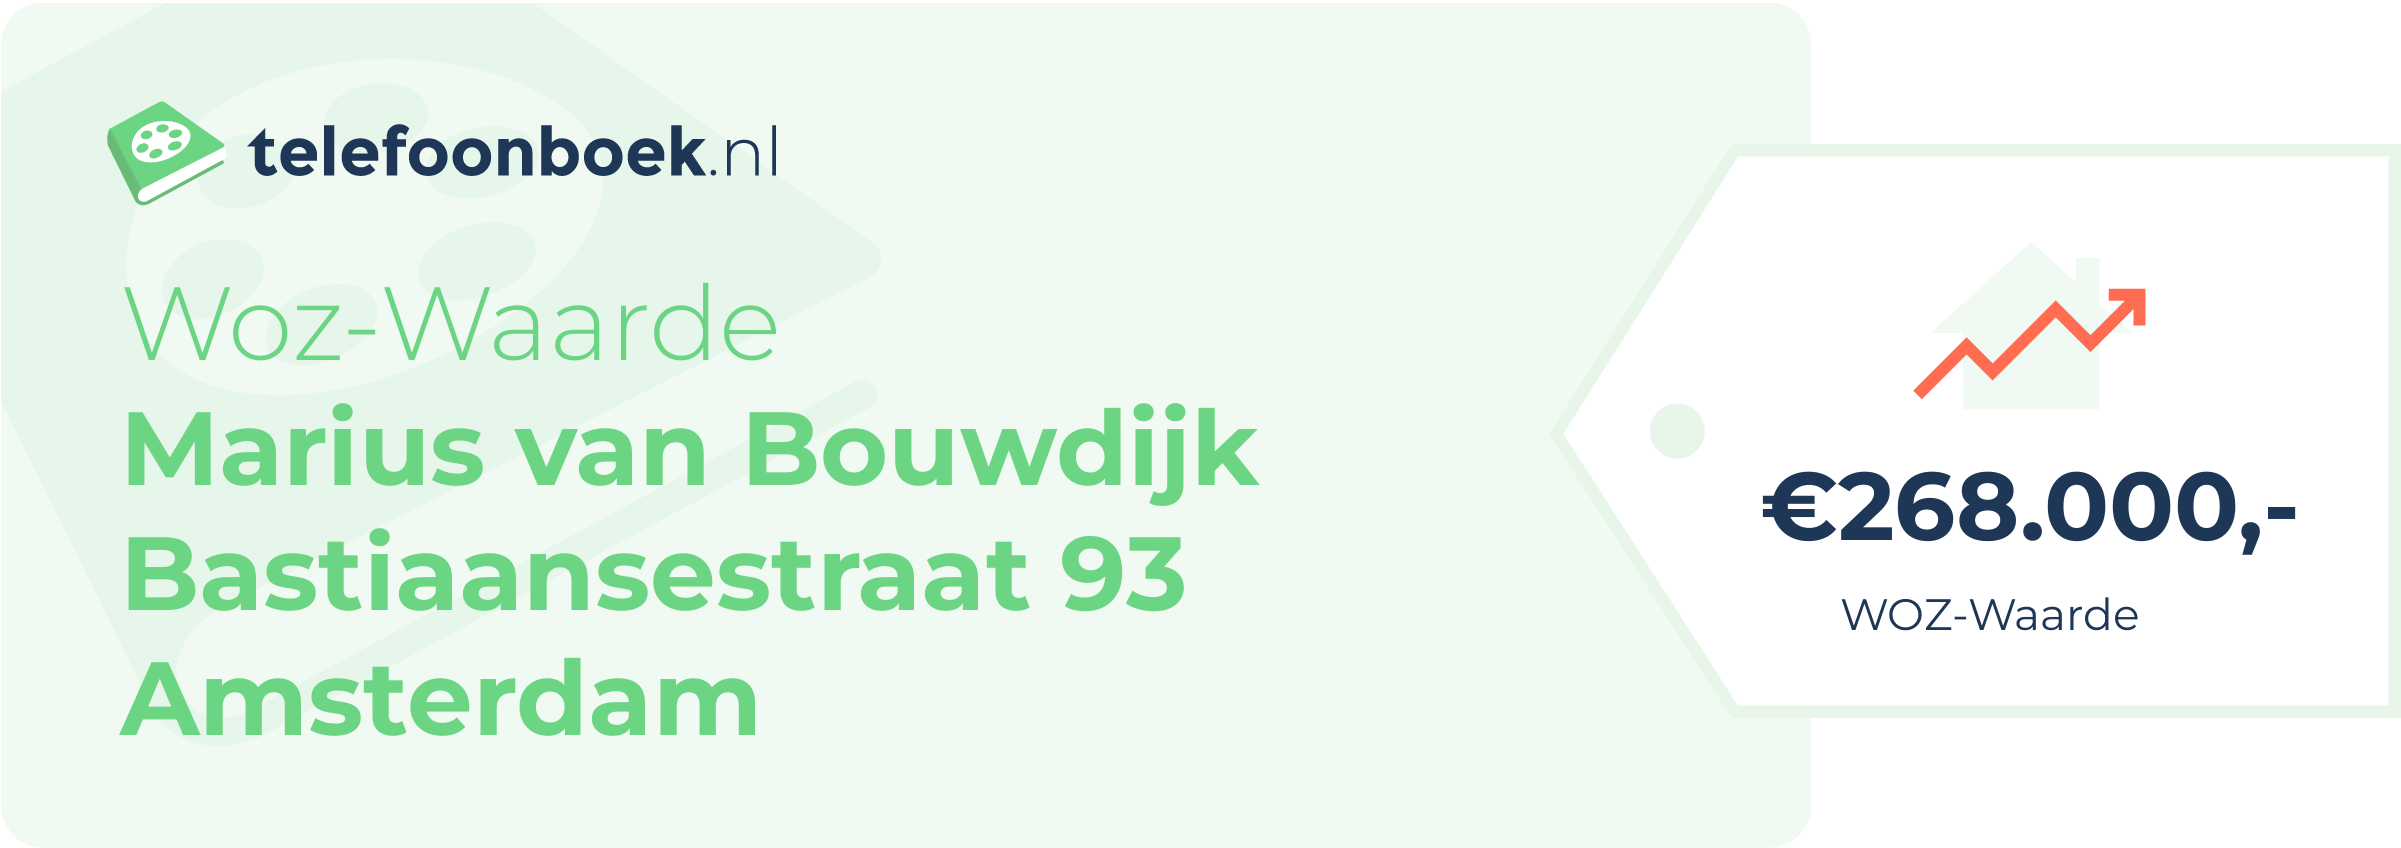 WOZ-waarde Marius Van Bouwdijk Bastiaansestraat 93 Amsterdam